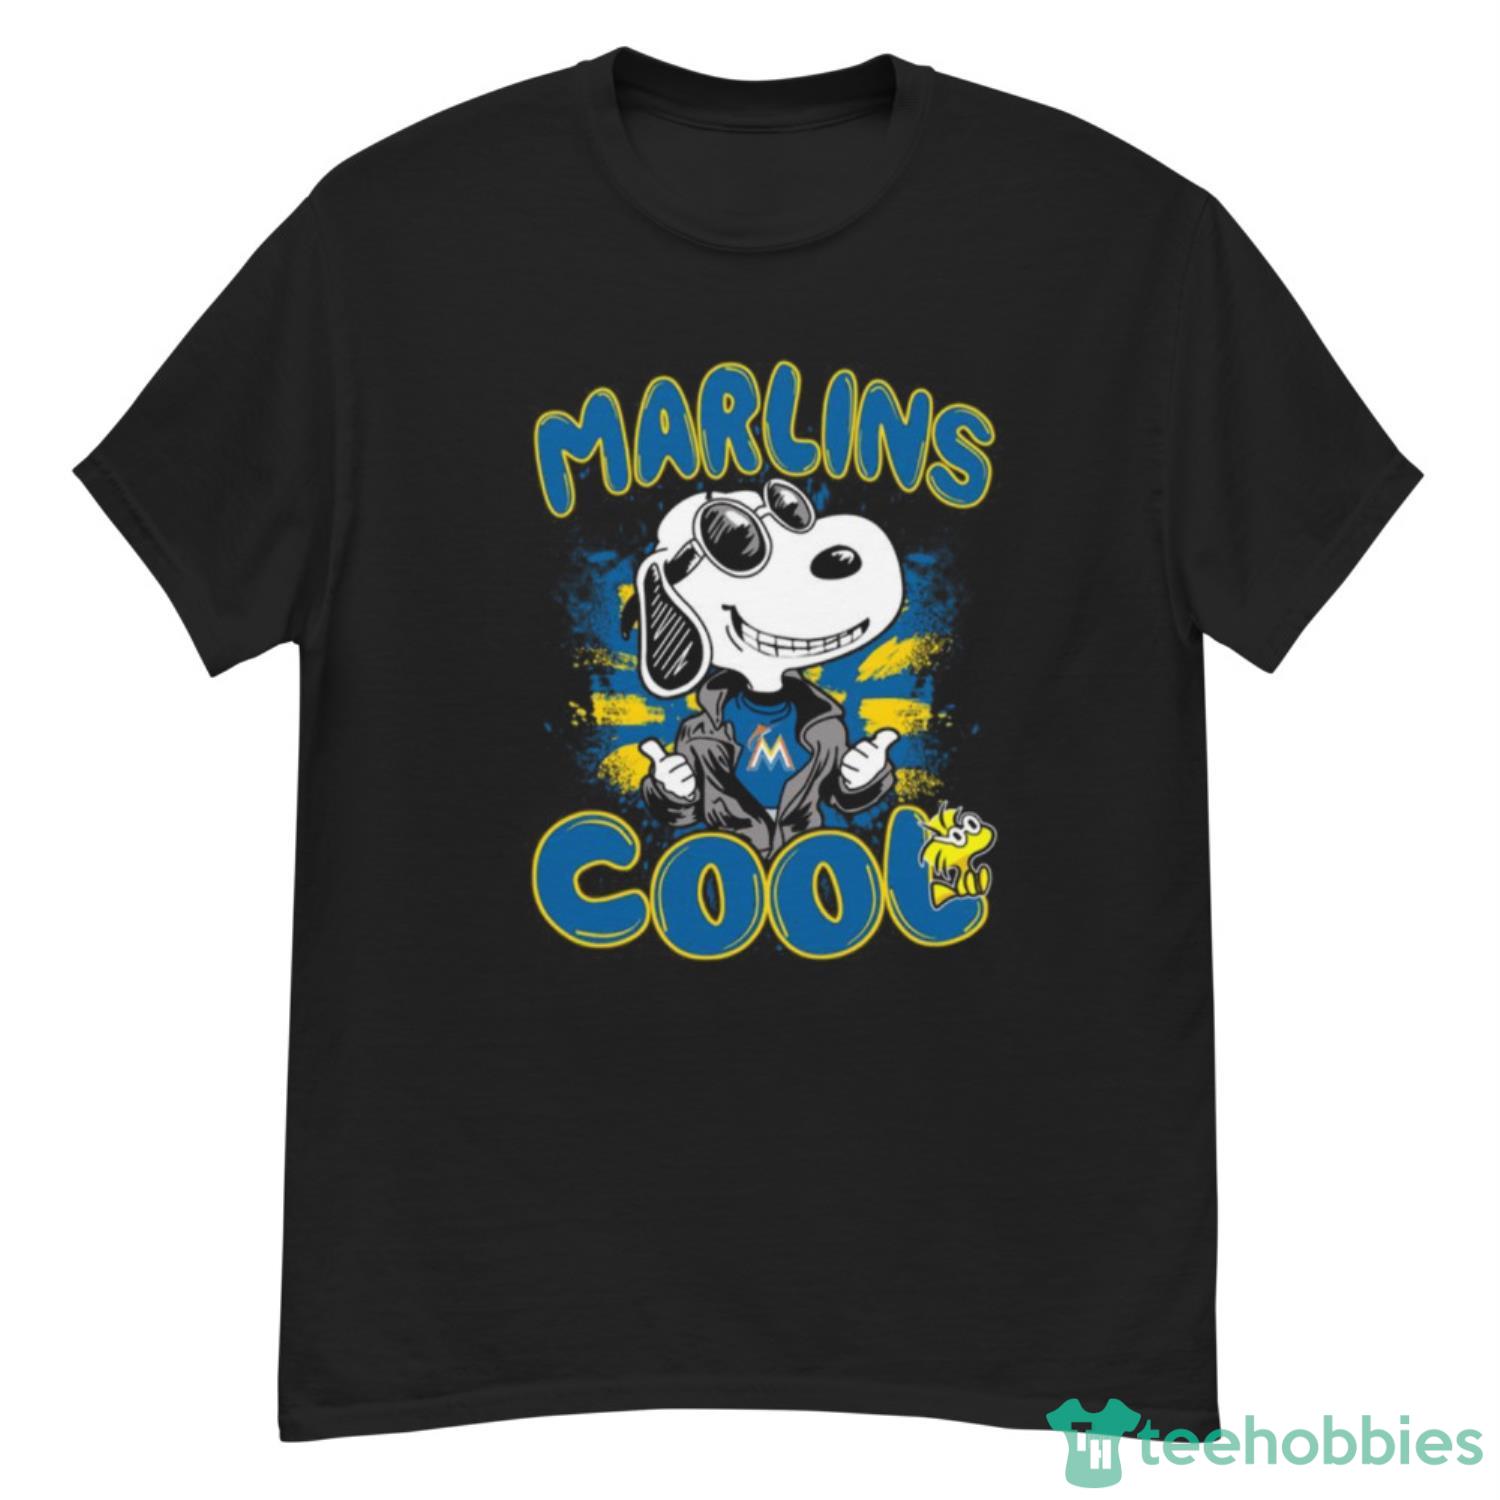 MLB Baseball Miami Marlins Cool Snoopy Shirt T Shirt - G500 Men’s Classic T-Shirt